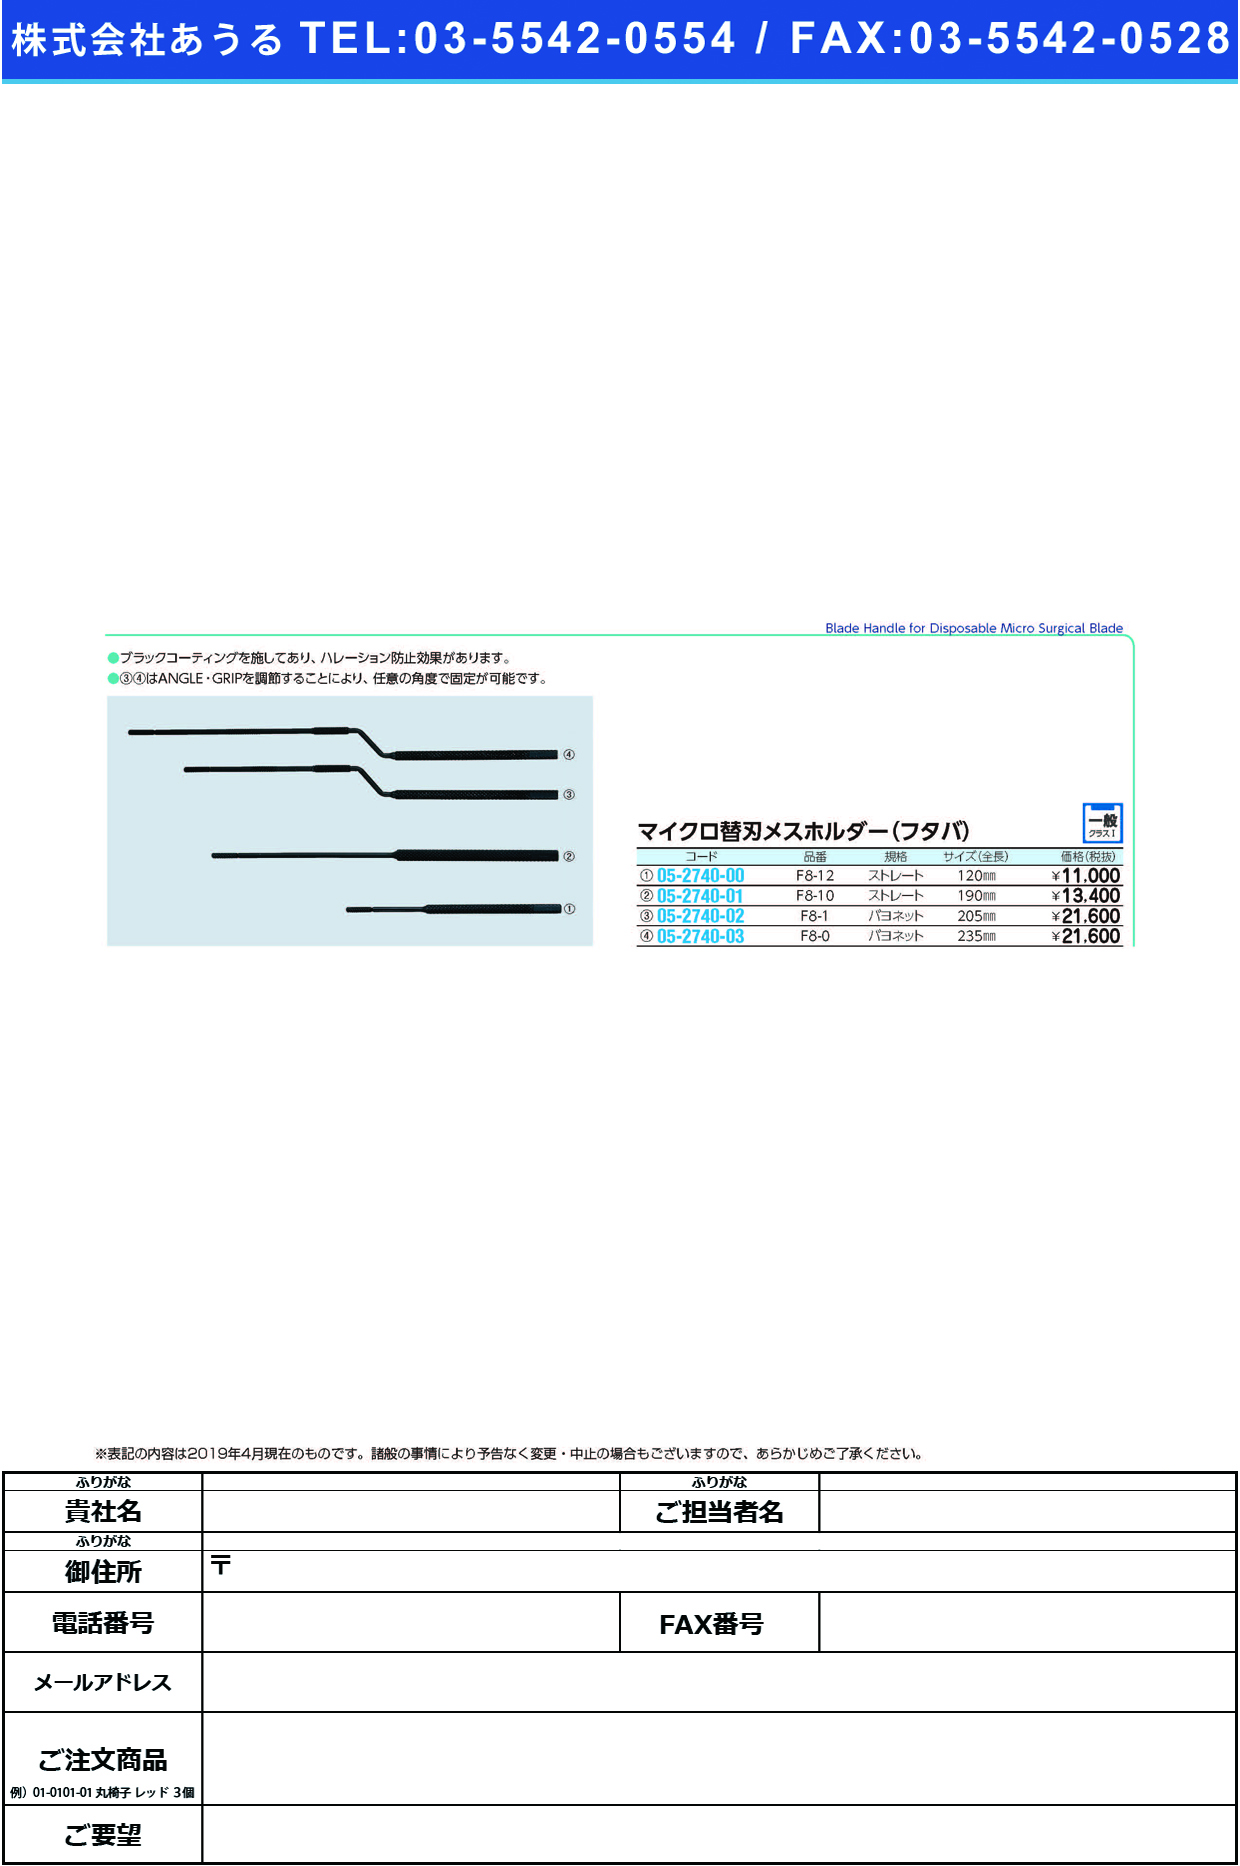 (05-2740-02)マイクロ替刃ホルダー（フタバ） F8-1ｶﾞﾀ ﾏｲｸﾛｶｴﾊﾞﾎﾙﾀﾞｰ(ﾌﾀﾊﾞ)【1本単位】【2019年カタログ商品】